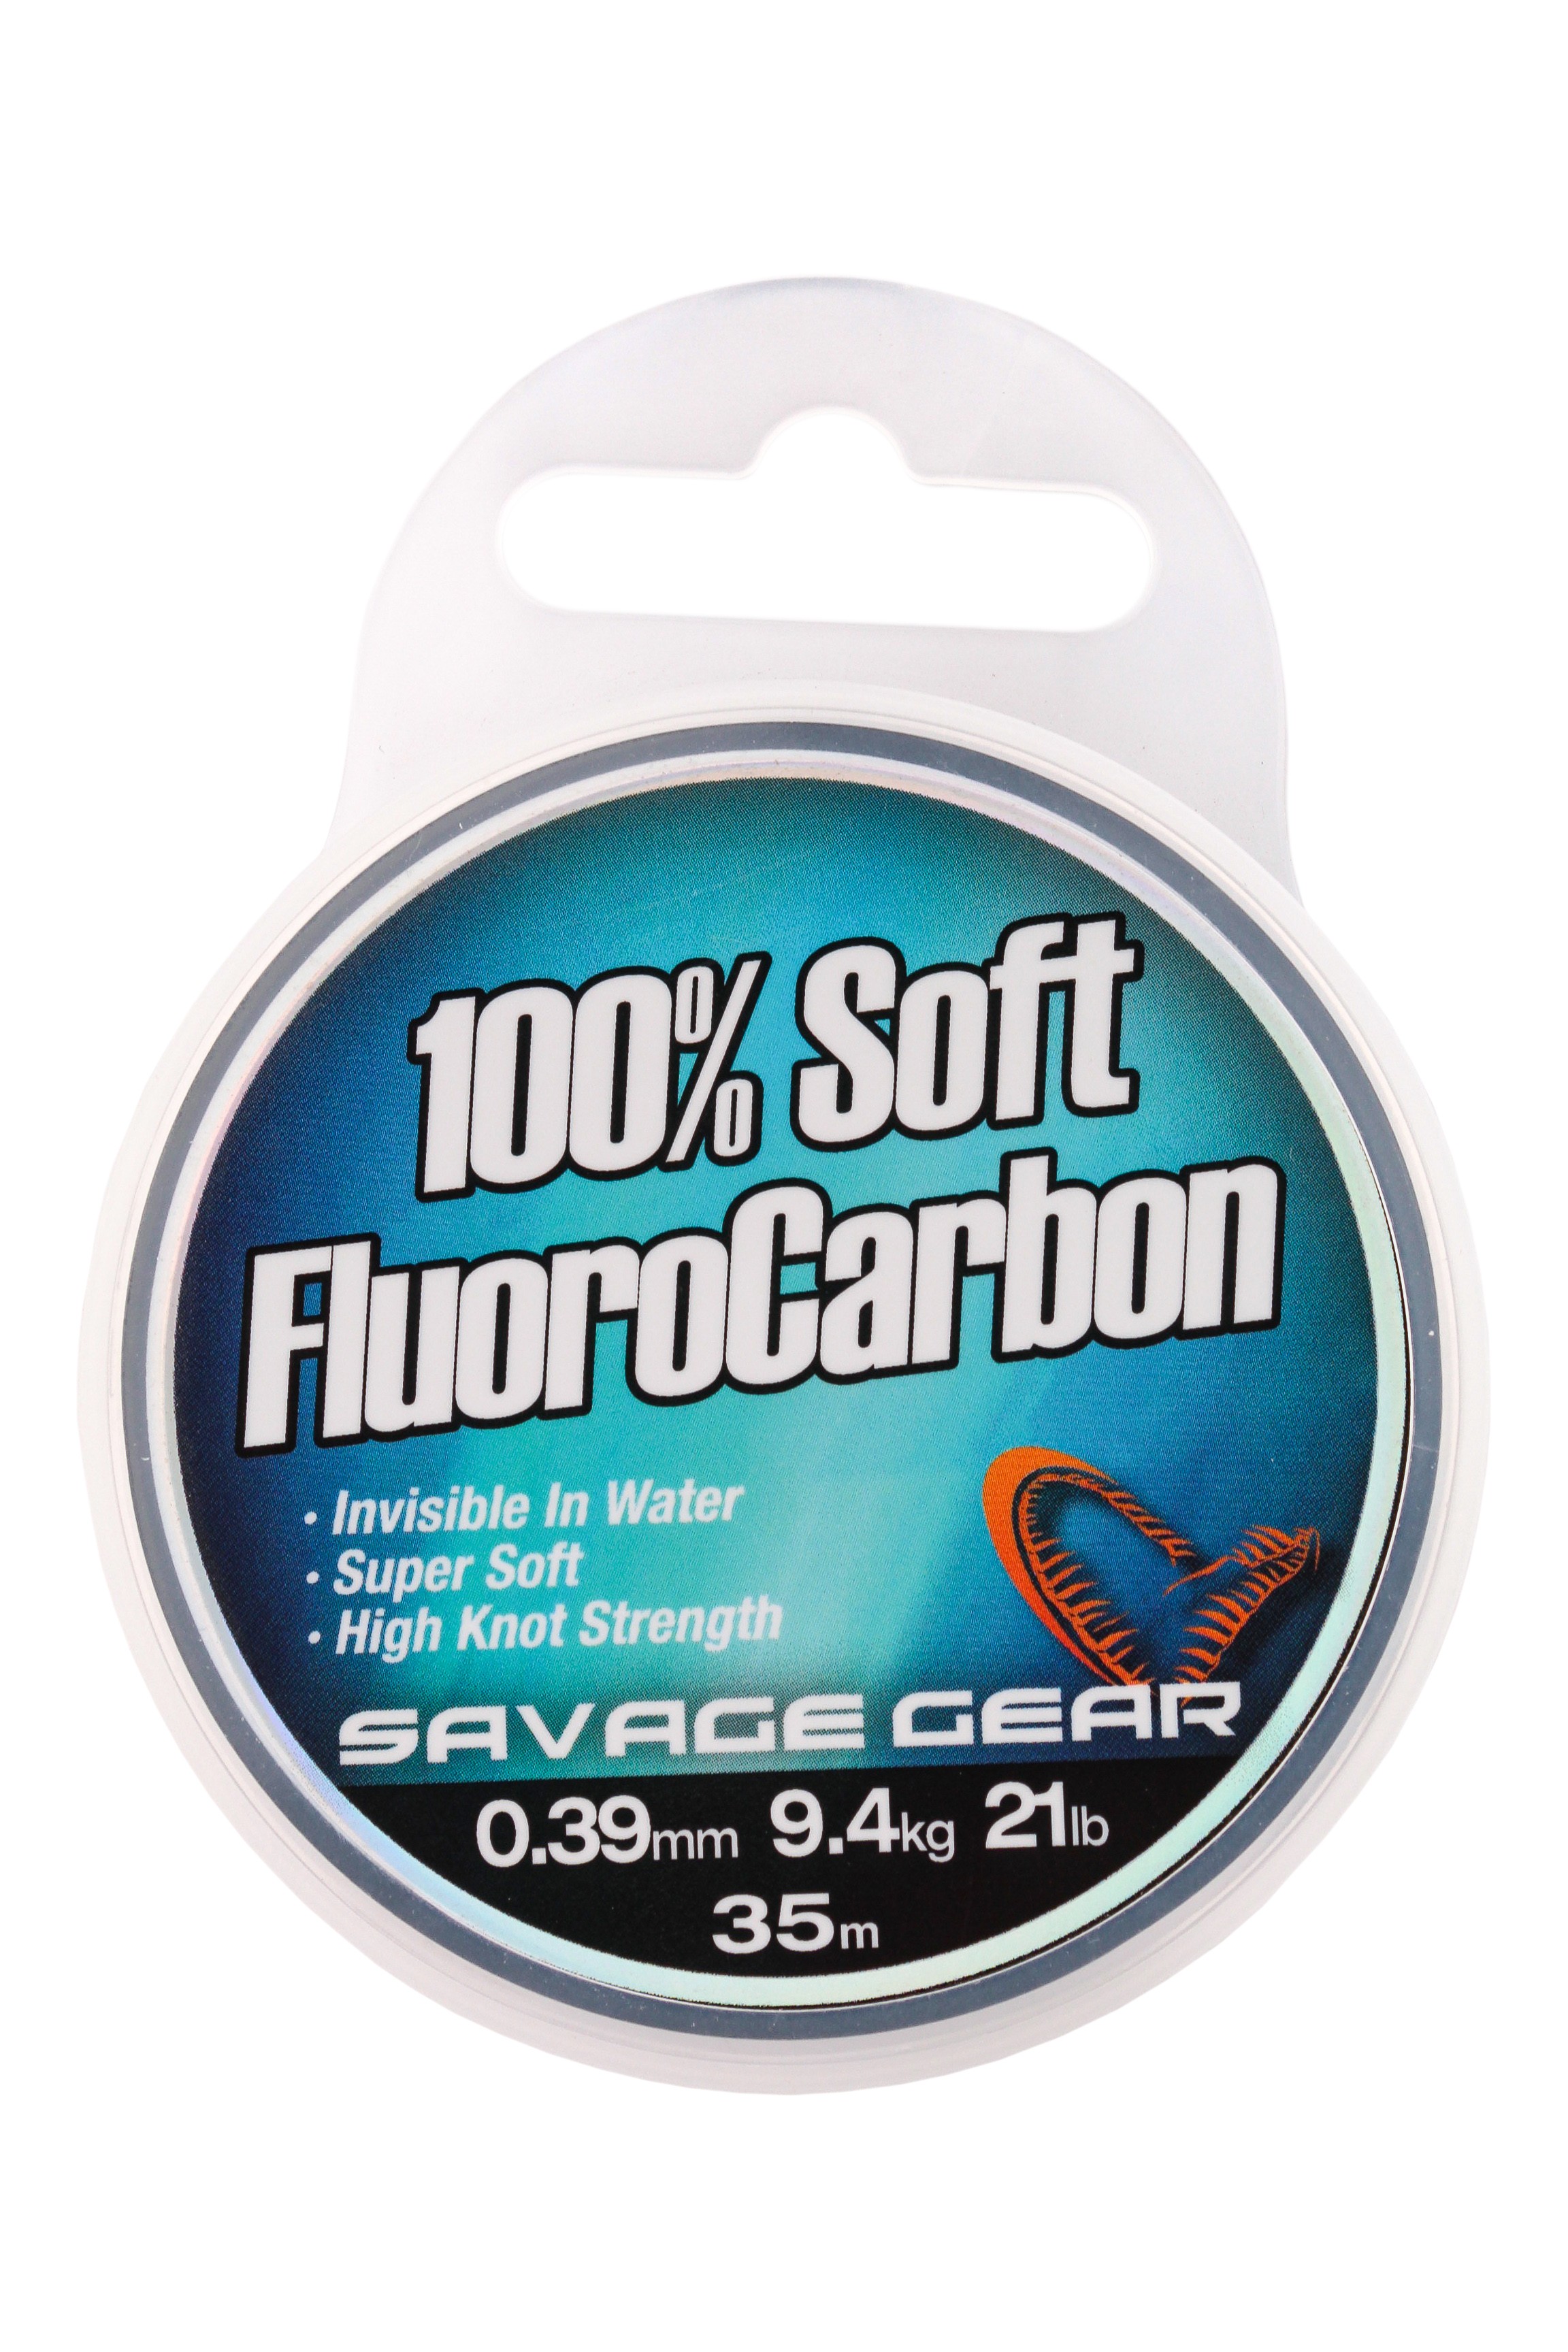 Леска Savage Gear Soft Fluoro Carbon 0.39мм 35м 21lb 9,4кг - фото 1